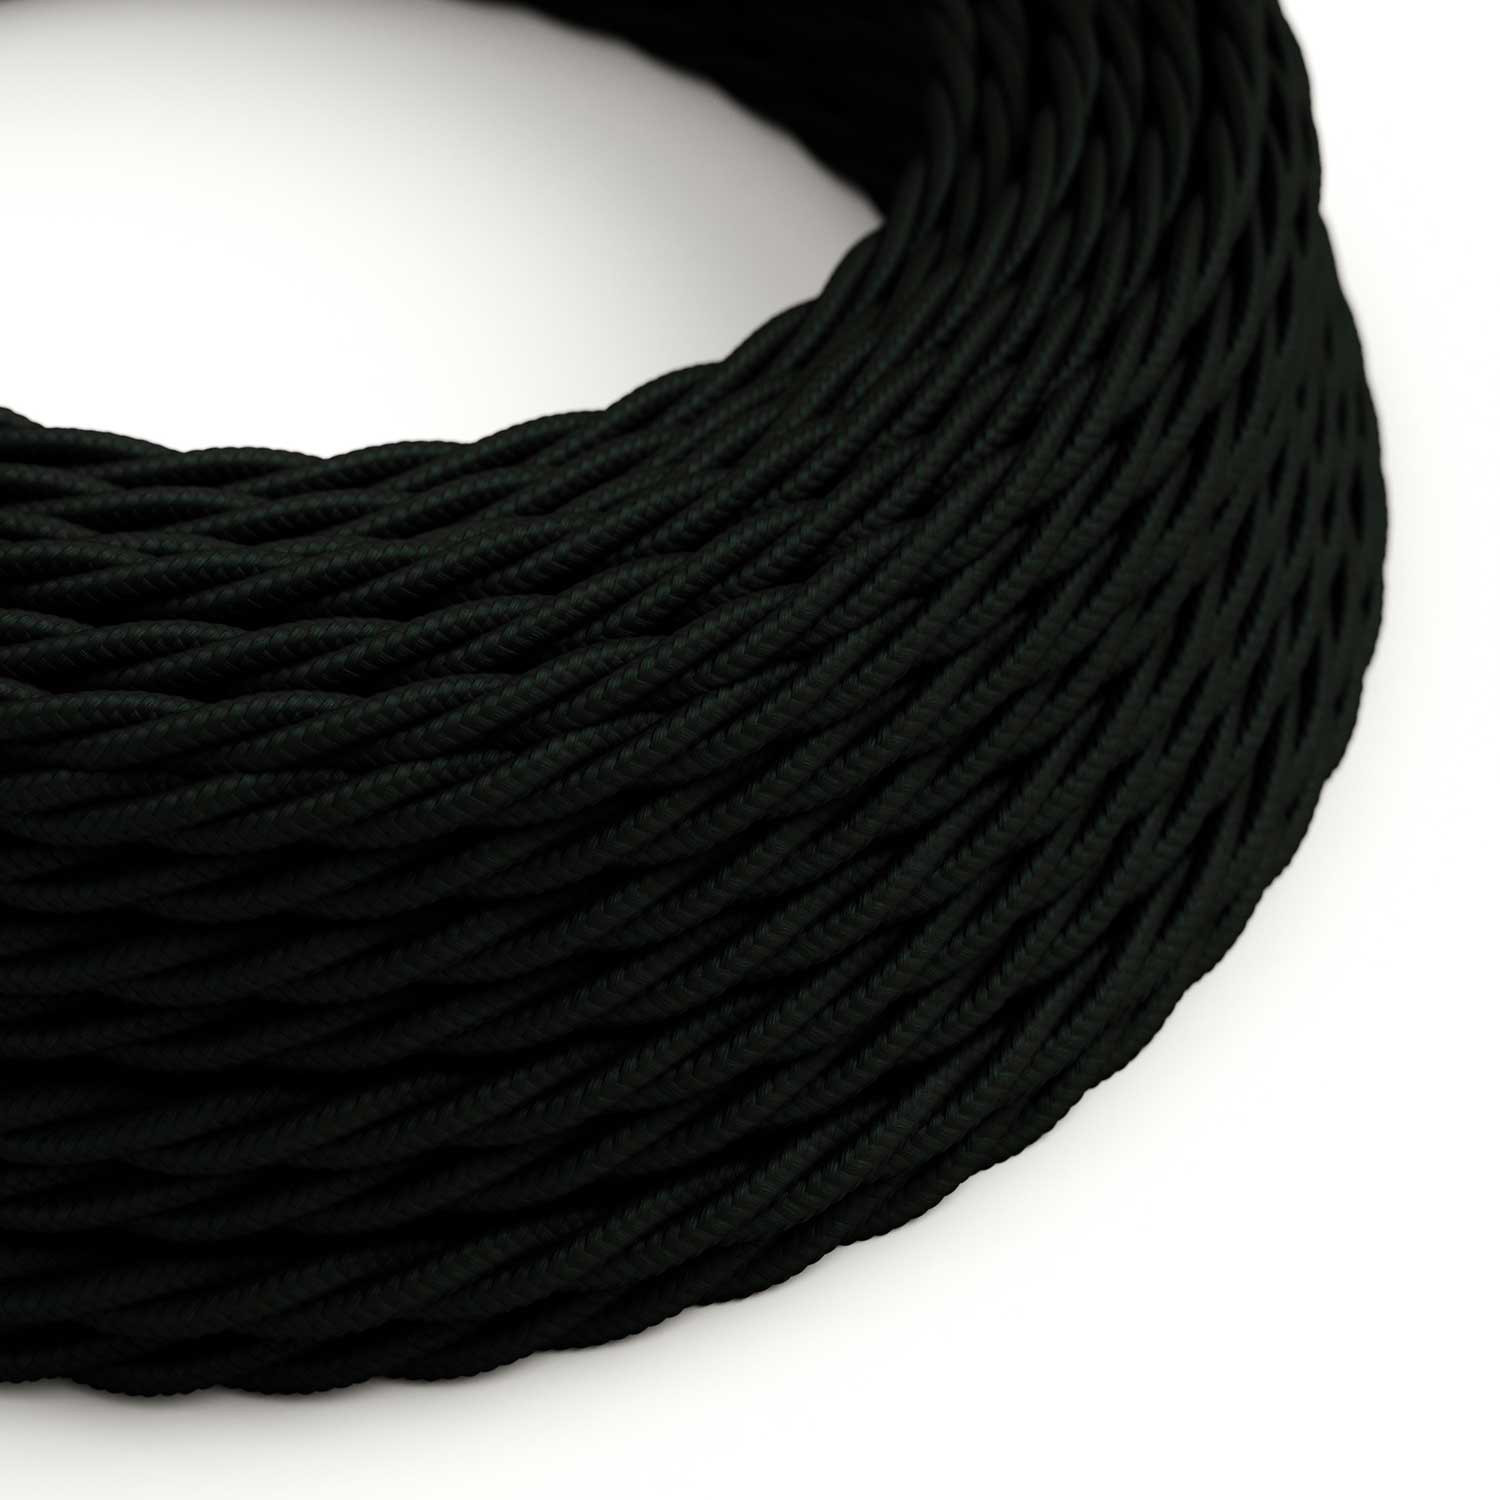 Cavo tessile Nero Carbone lucido - L'Originale Creative-Cables - TM04 trecciato 2x0,75mm / 3x0,75mm